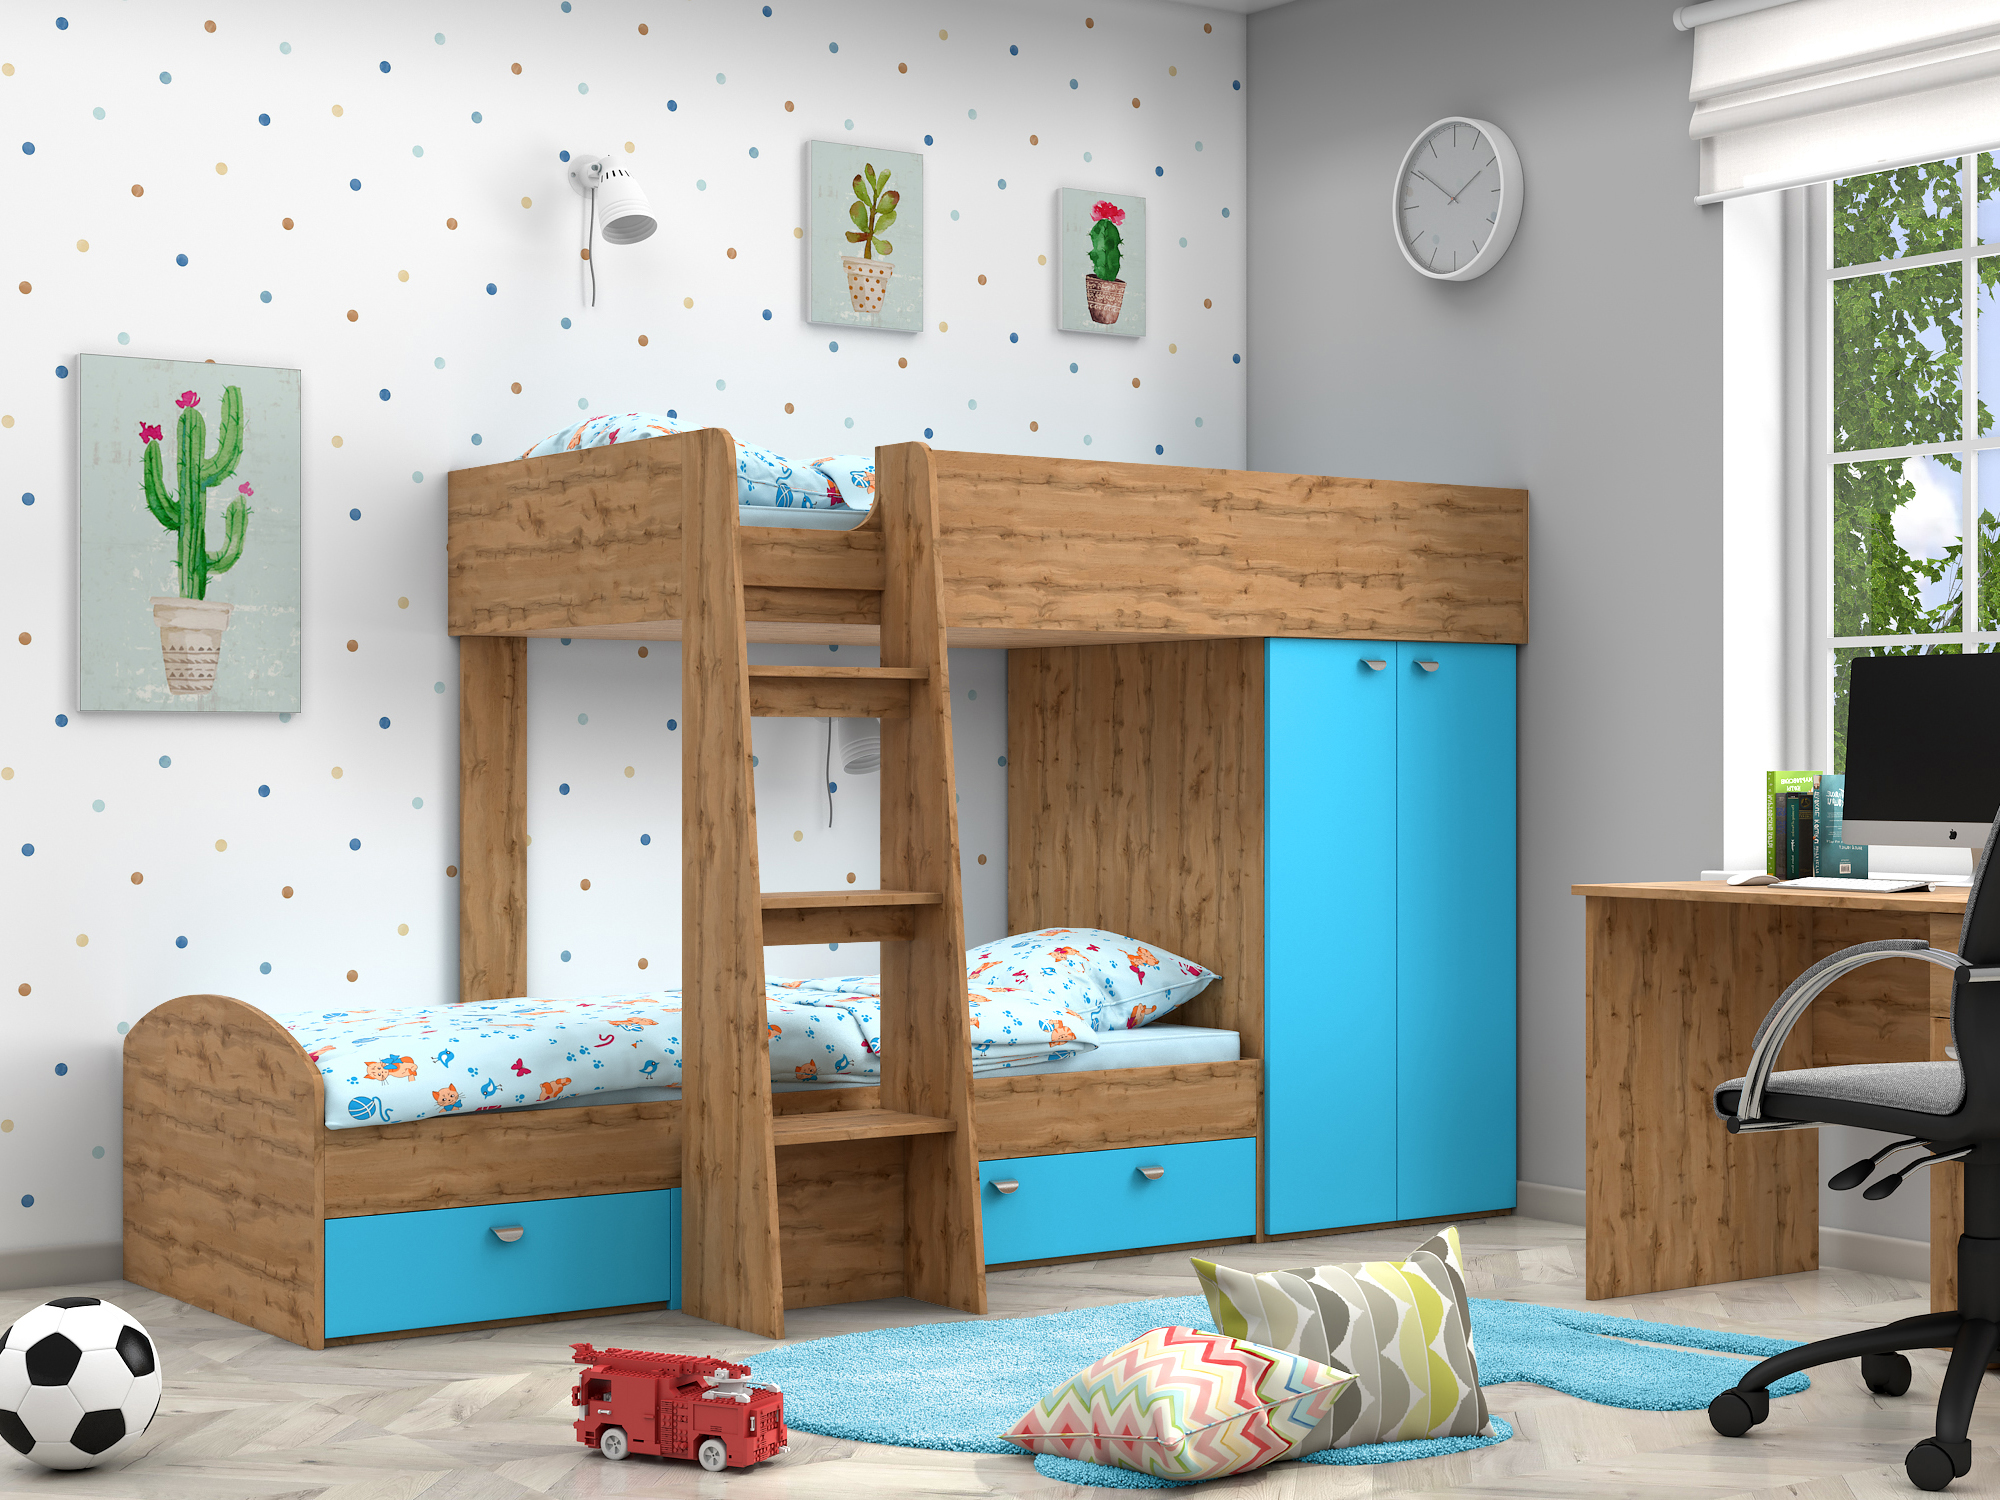 Двухъярусная кровать Golden Kids-2 (90х200) Голубой, Бежевый, ЛДСП двухъярусная кровать golden kids 2 90х200 зеленый бежевый лдсп